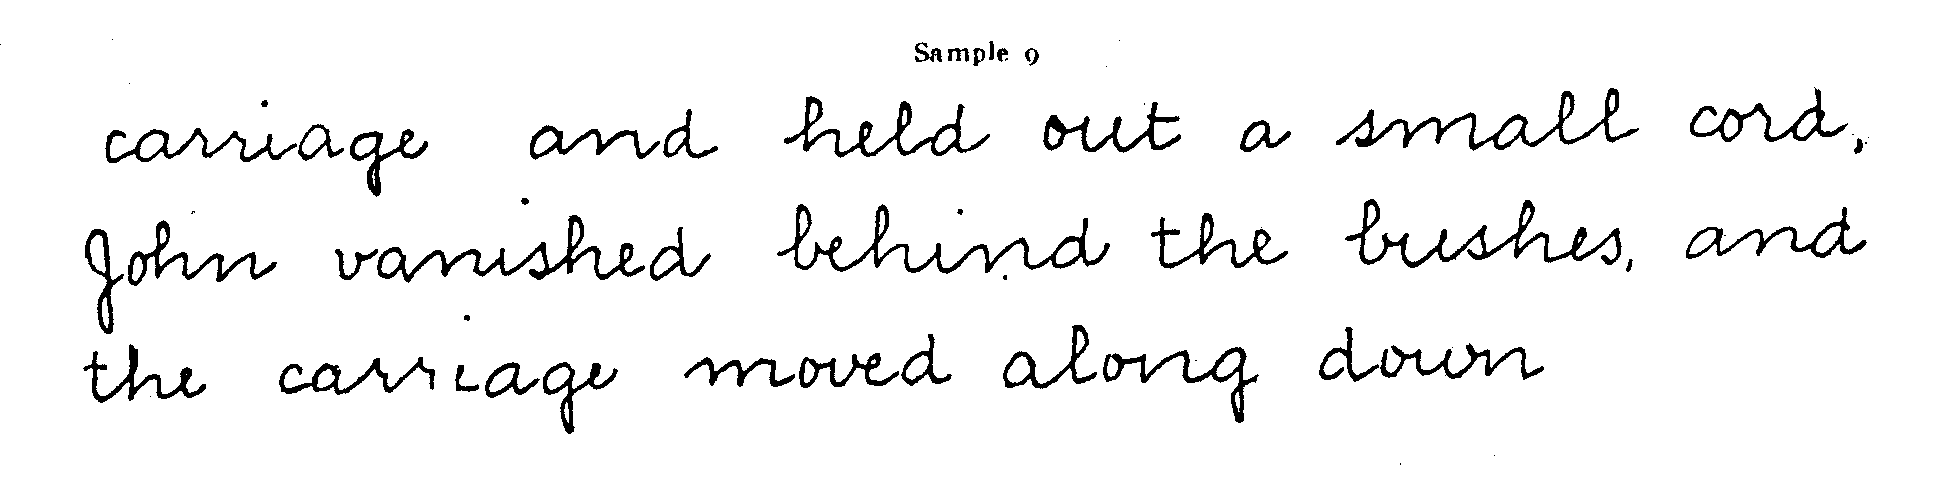 Sample 9, Handwriting